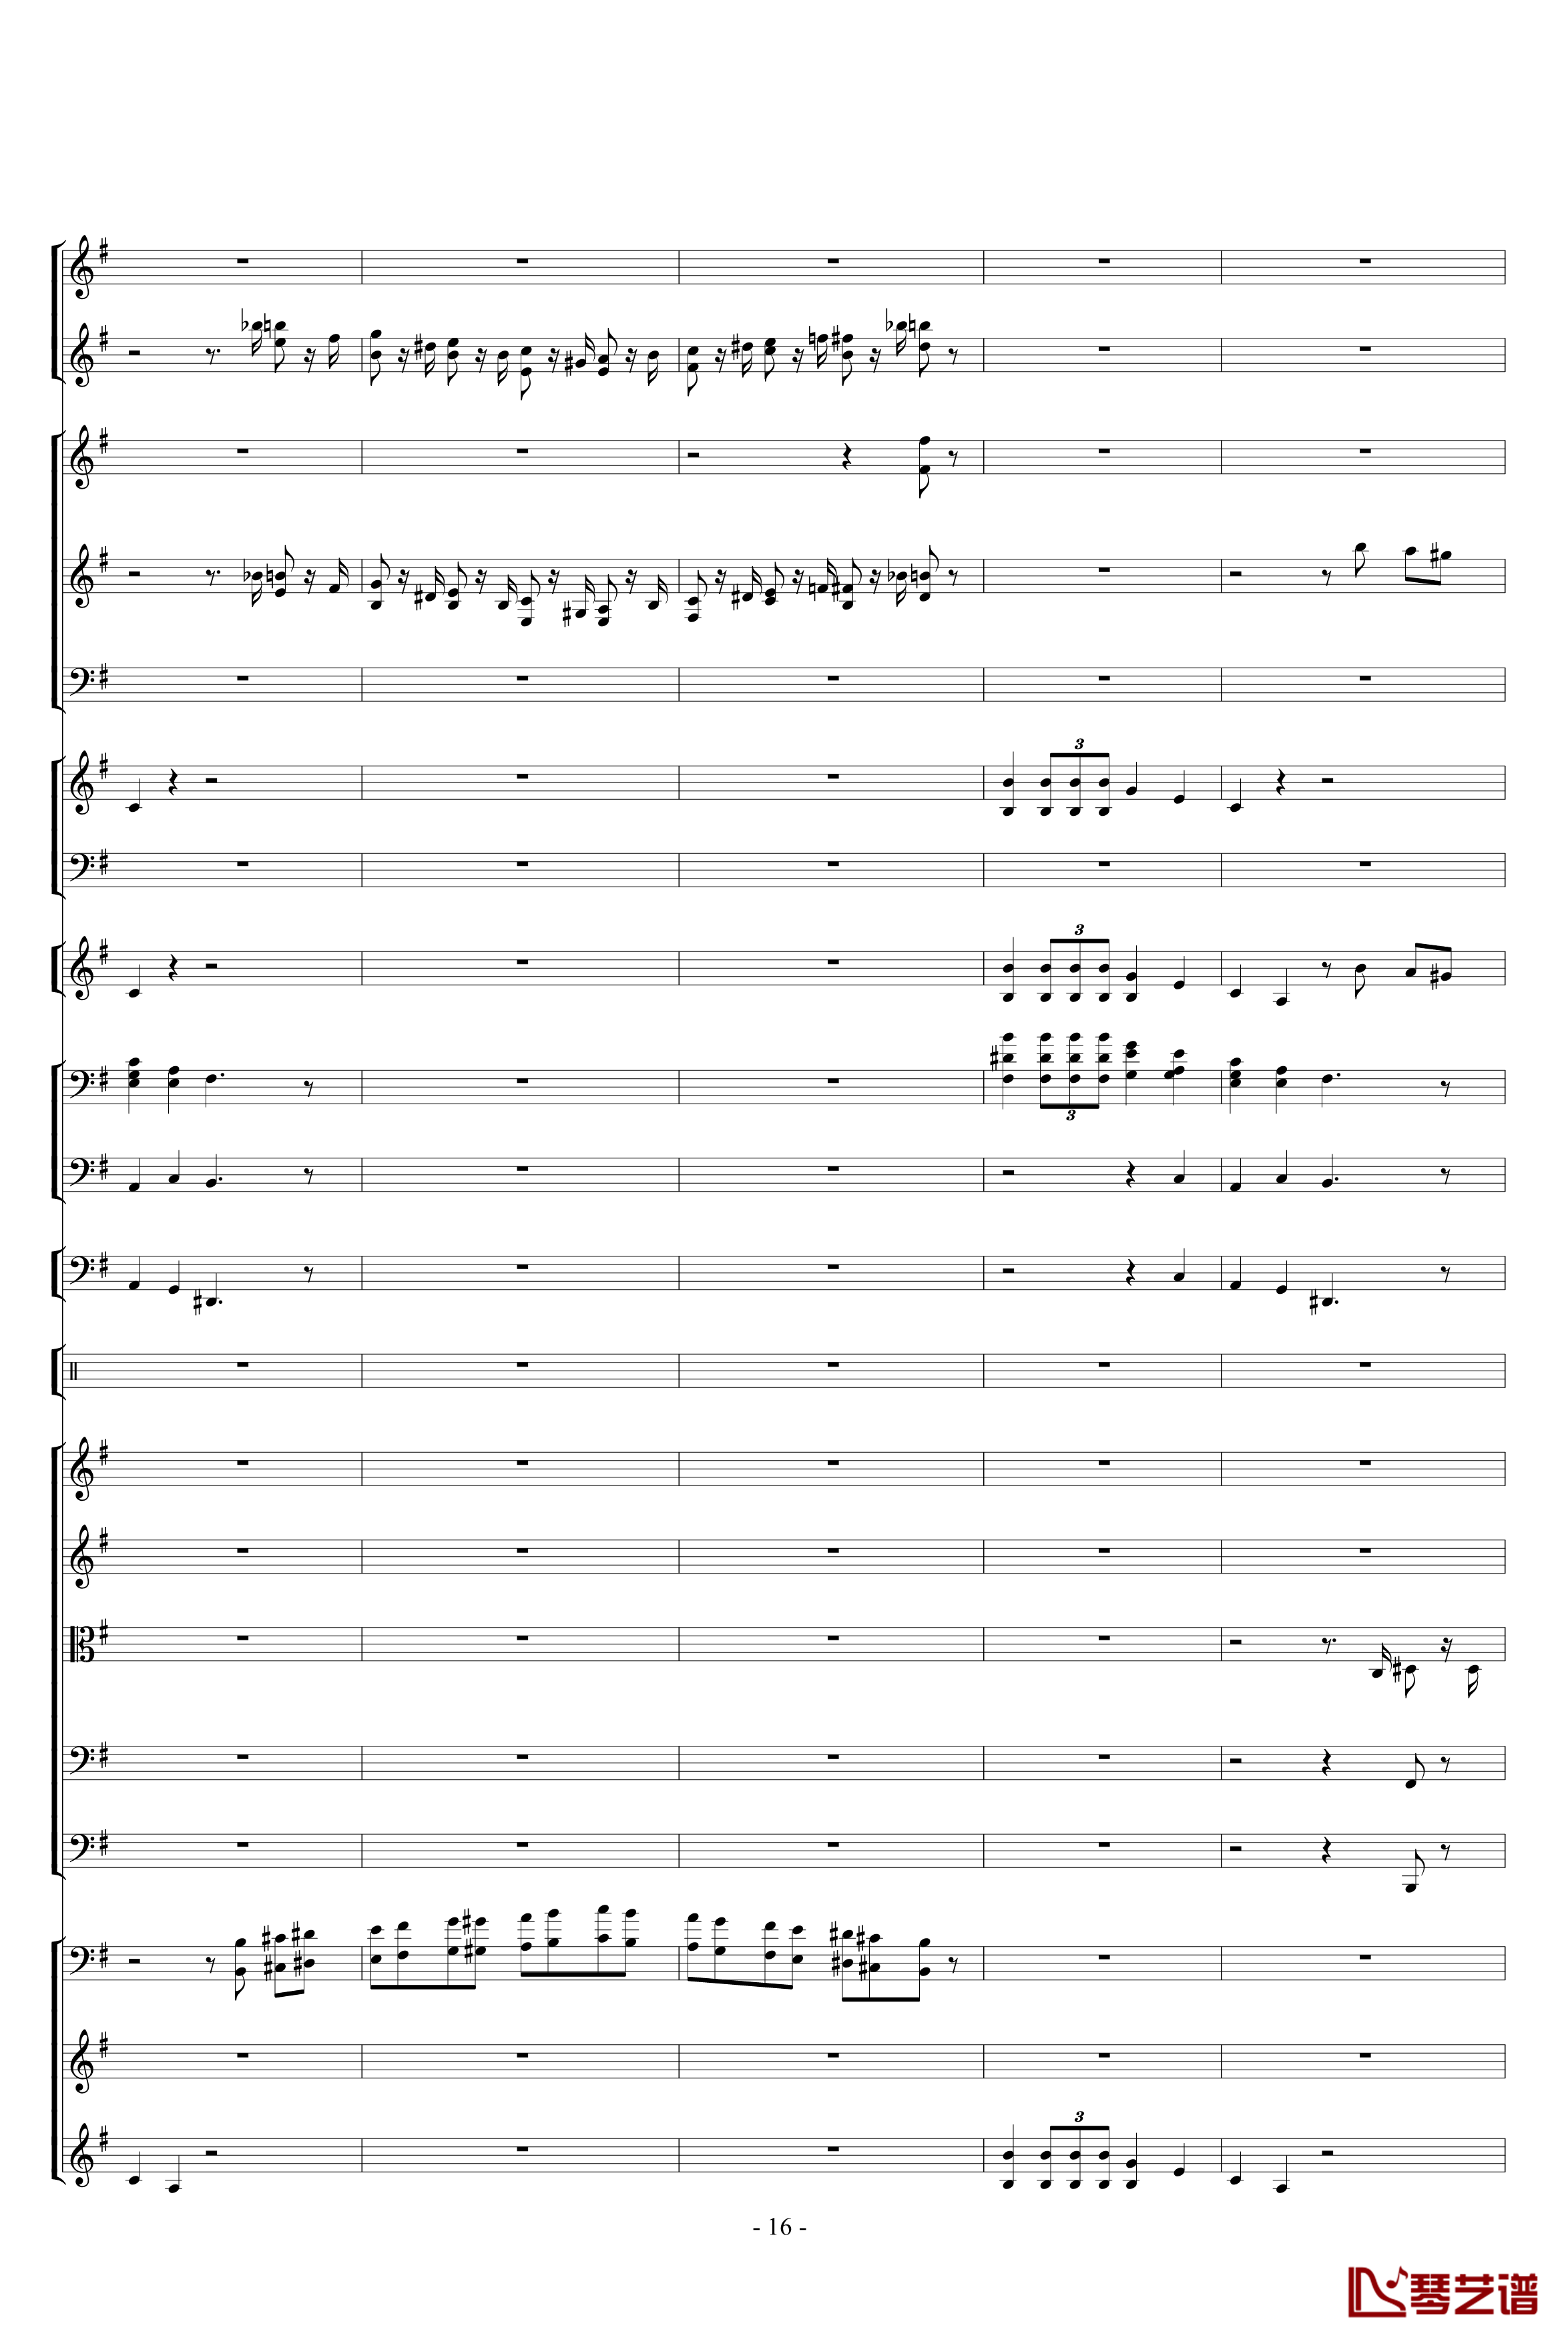 胡桃夹子组曲之进行曲钢琴谱-柴科夫斯基-Peter Ilyich Tchaikovsky16